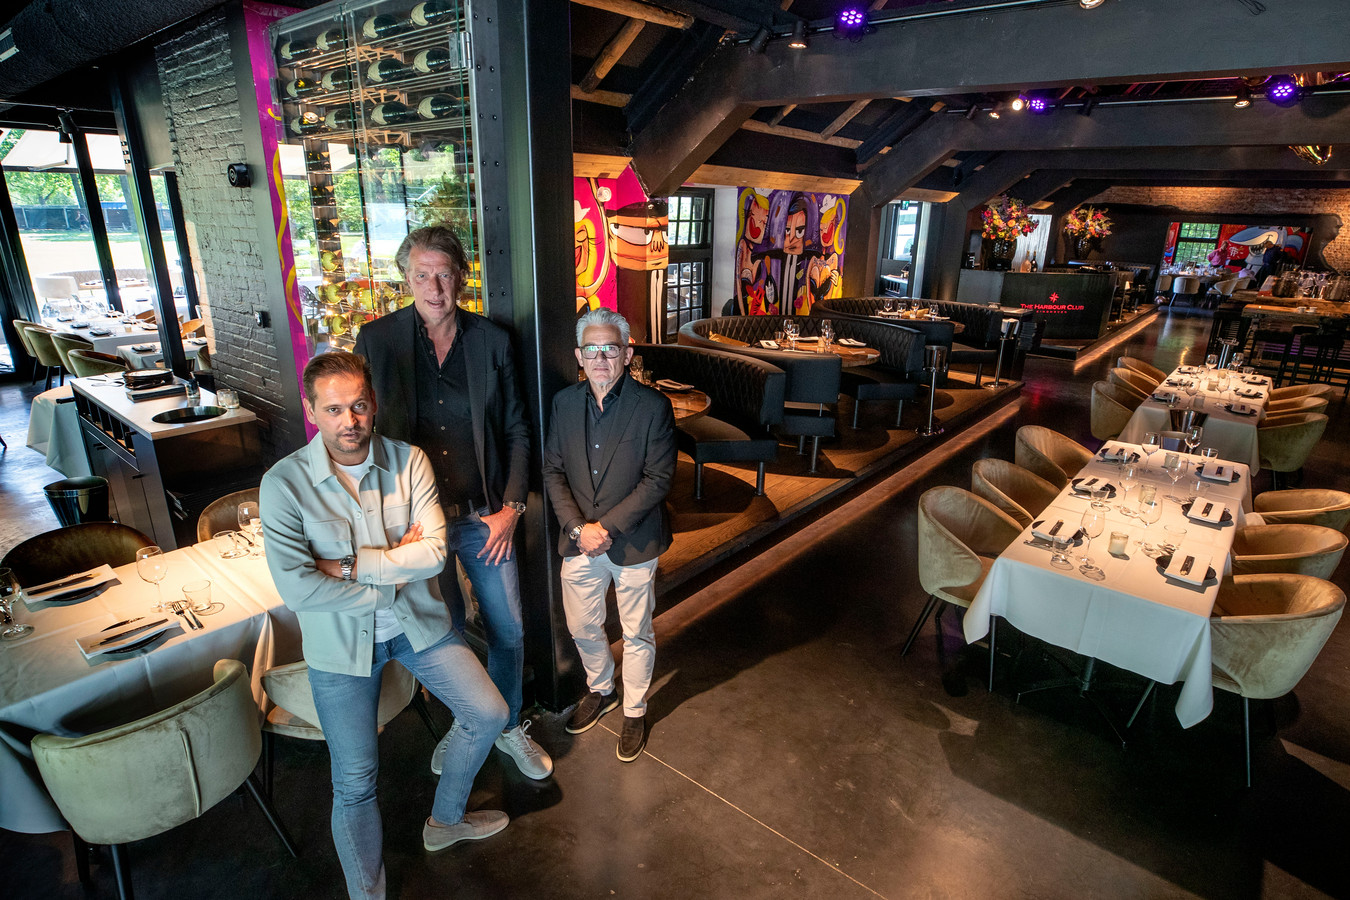 Zakelijke partners Joost Verhoeven en Richard van Leeuwen met hun bedrijfsleider Willem Rooijakkers (vlnr) in The Harbour Club aan de Karpendonkse Plas.